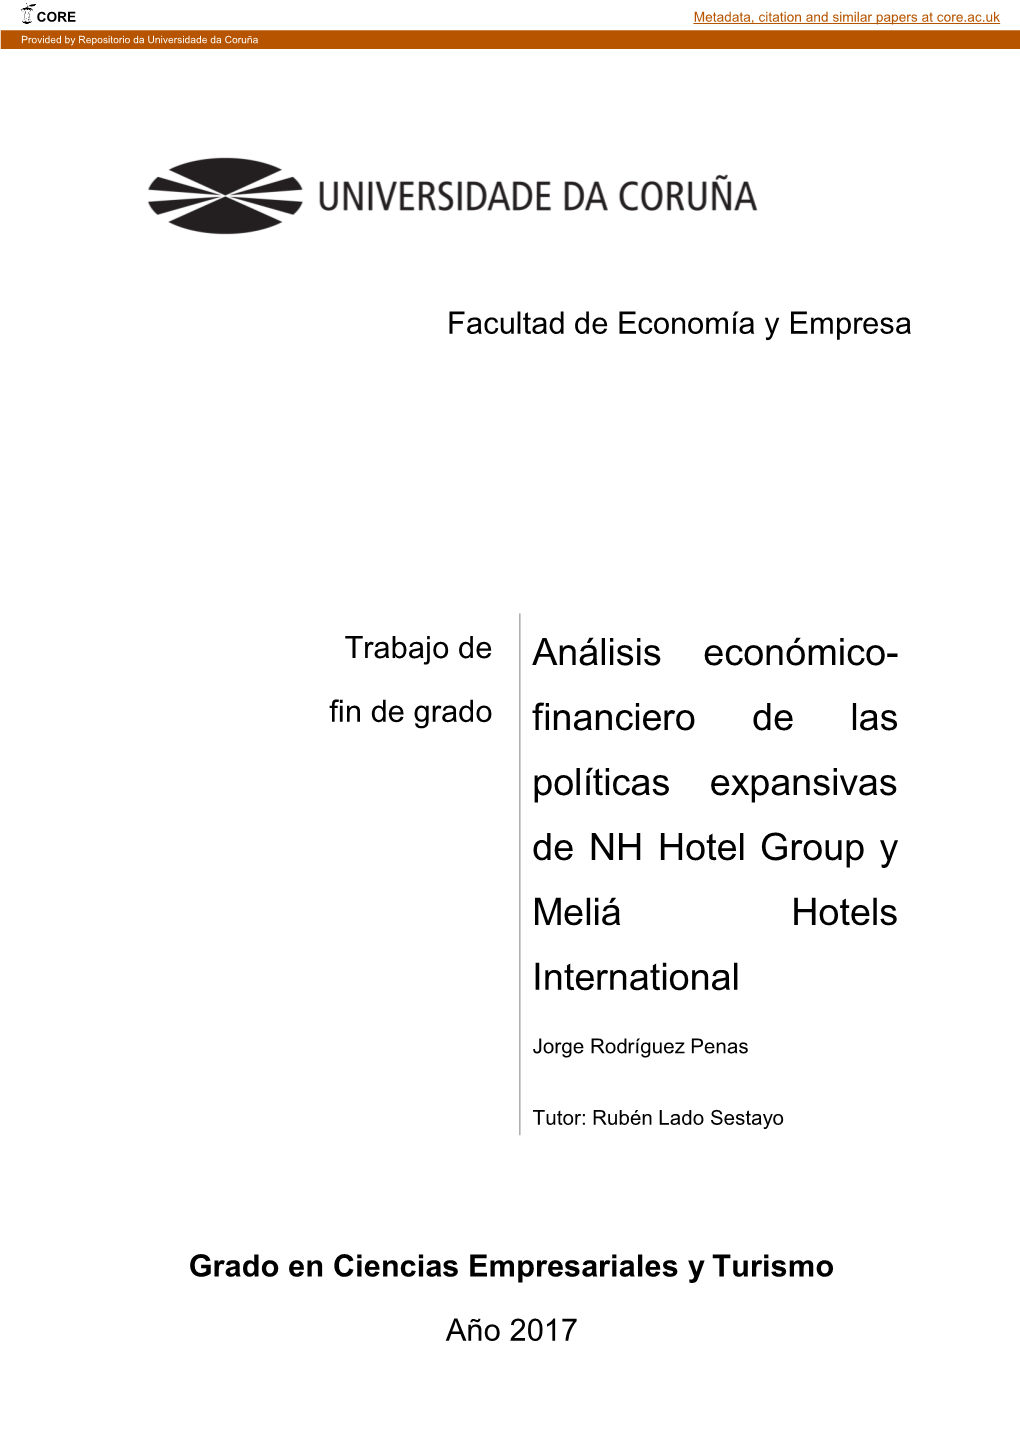 Análisis Económico-Financiero De Las Políticas Expansivas De NH Hotel Group Y Meliá Hotels International